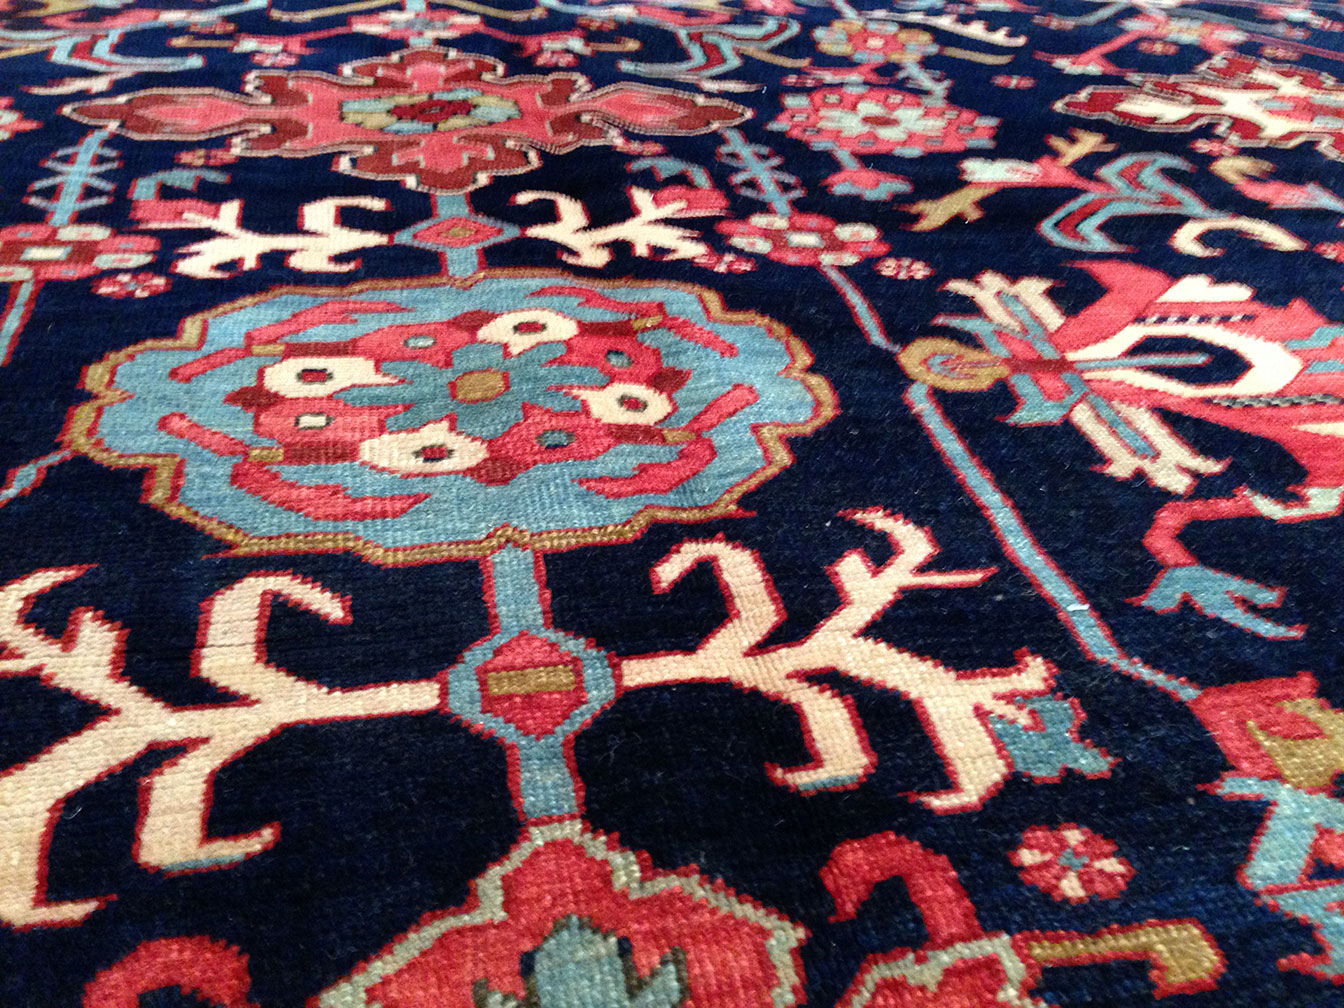 Antique heriz Carpet - # 9245